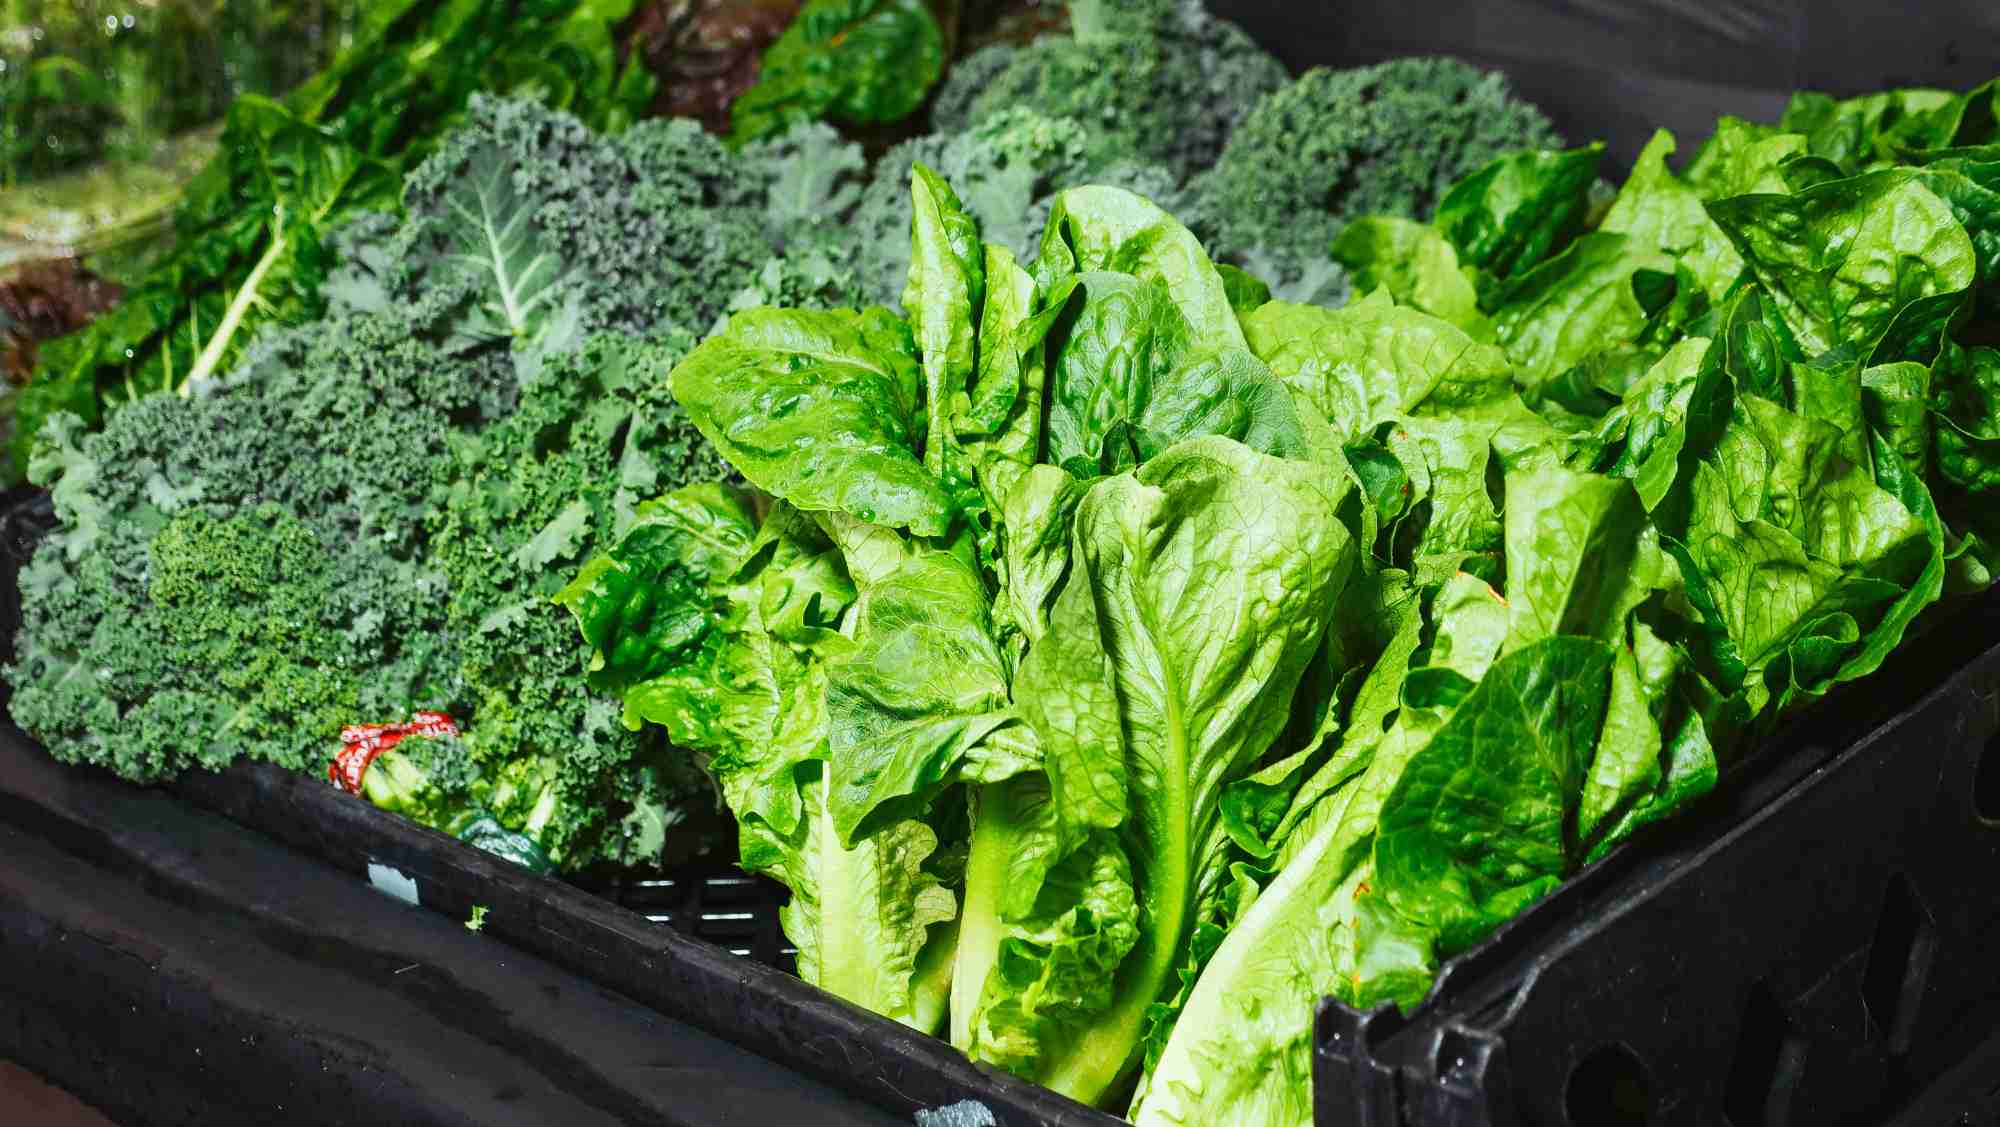 tervislikud rohelised salatid ja lehtköögiviljad